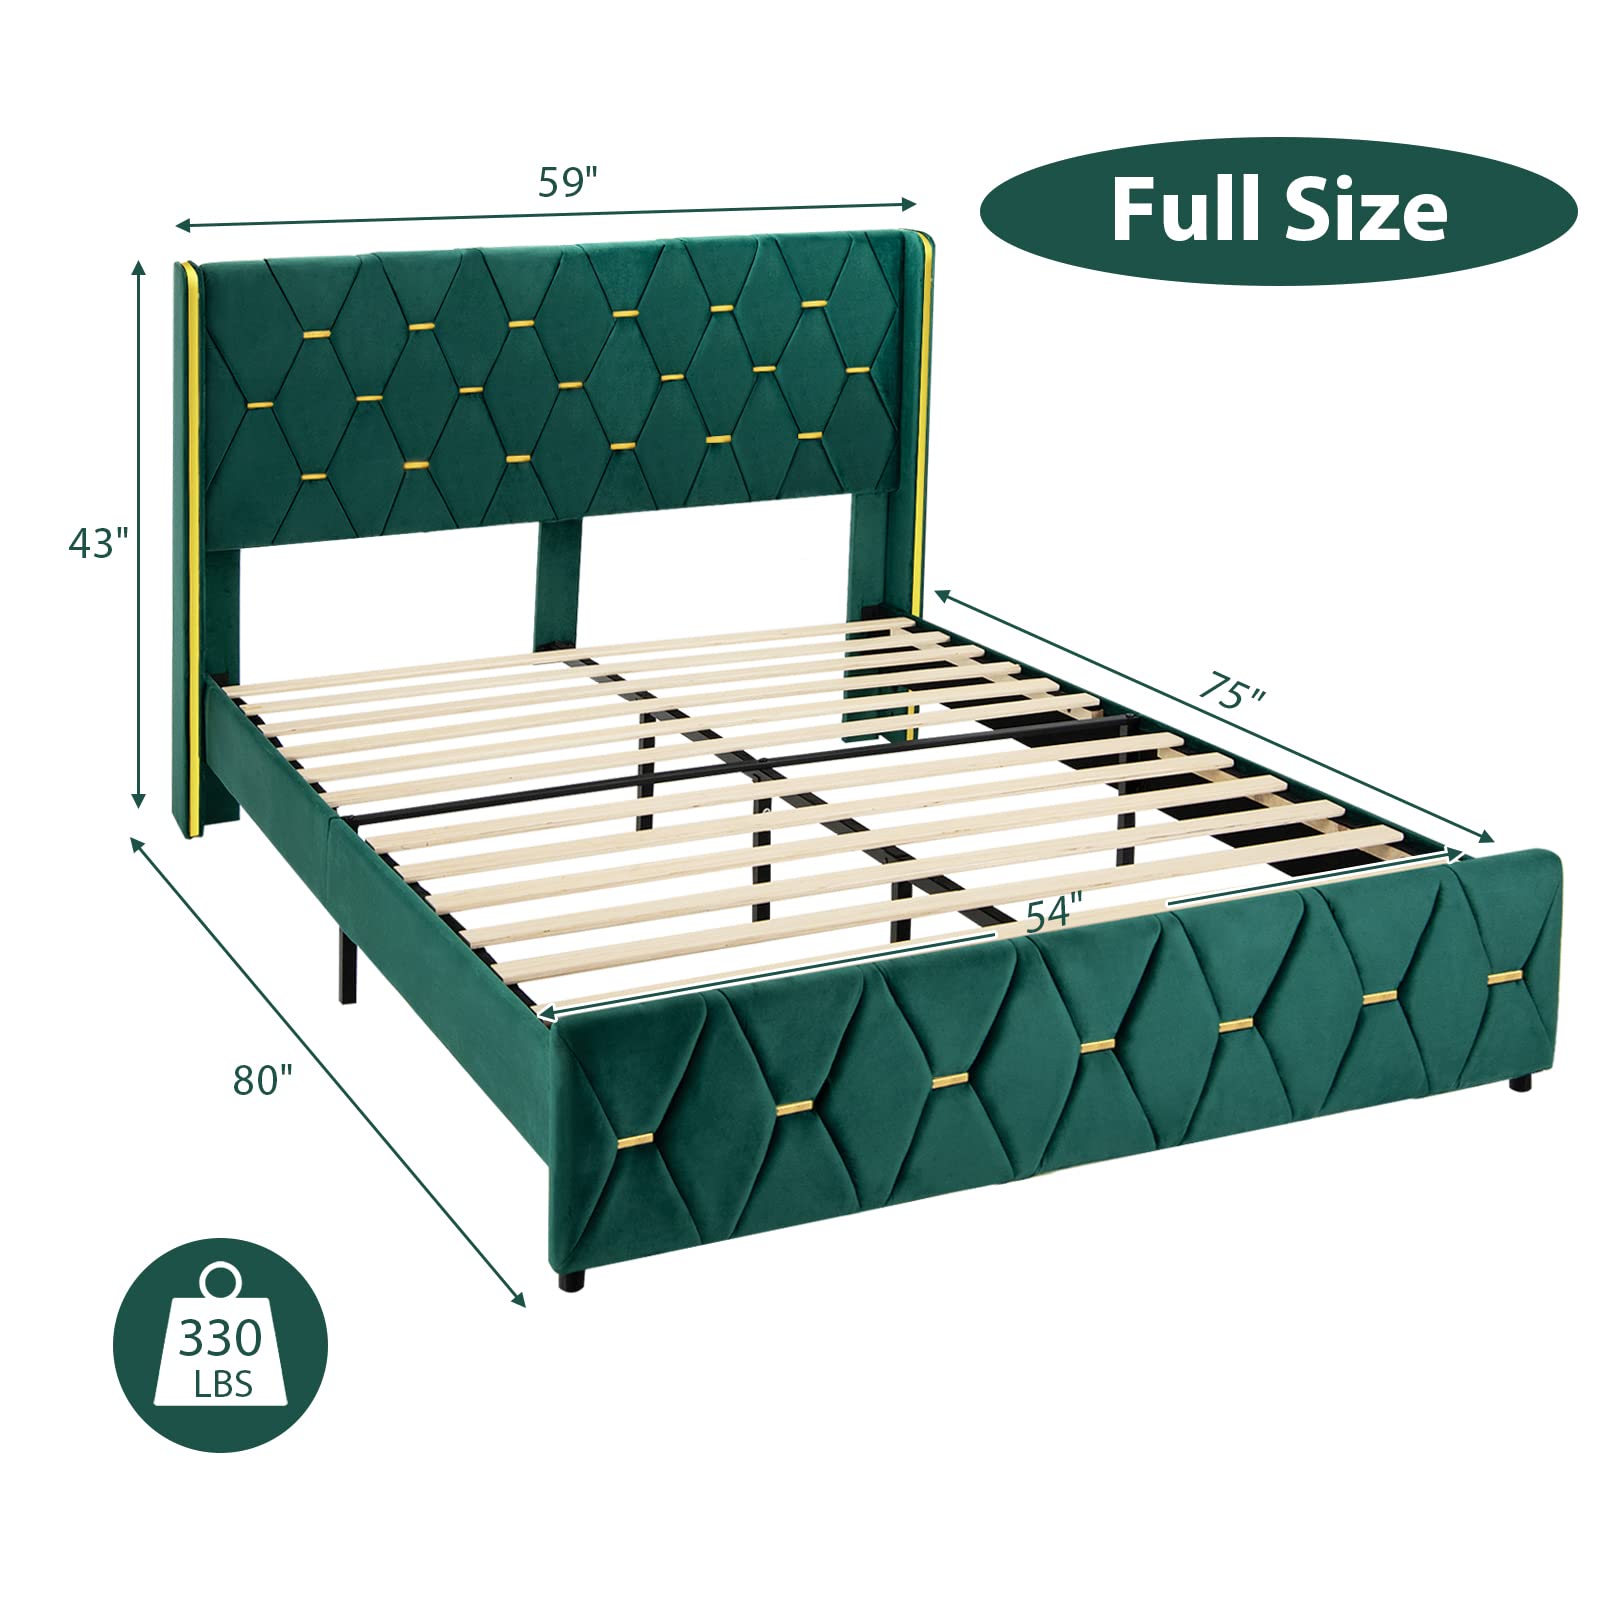 Giantex Upholstered Platform Bed Frame, Full Size Bed with Adjustable Headboard & Wooden Slat Support